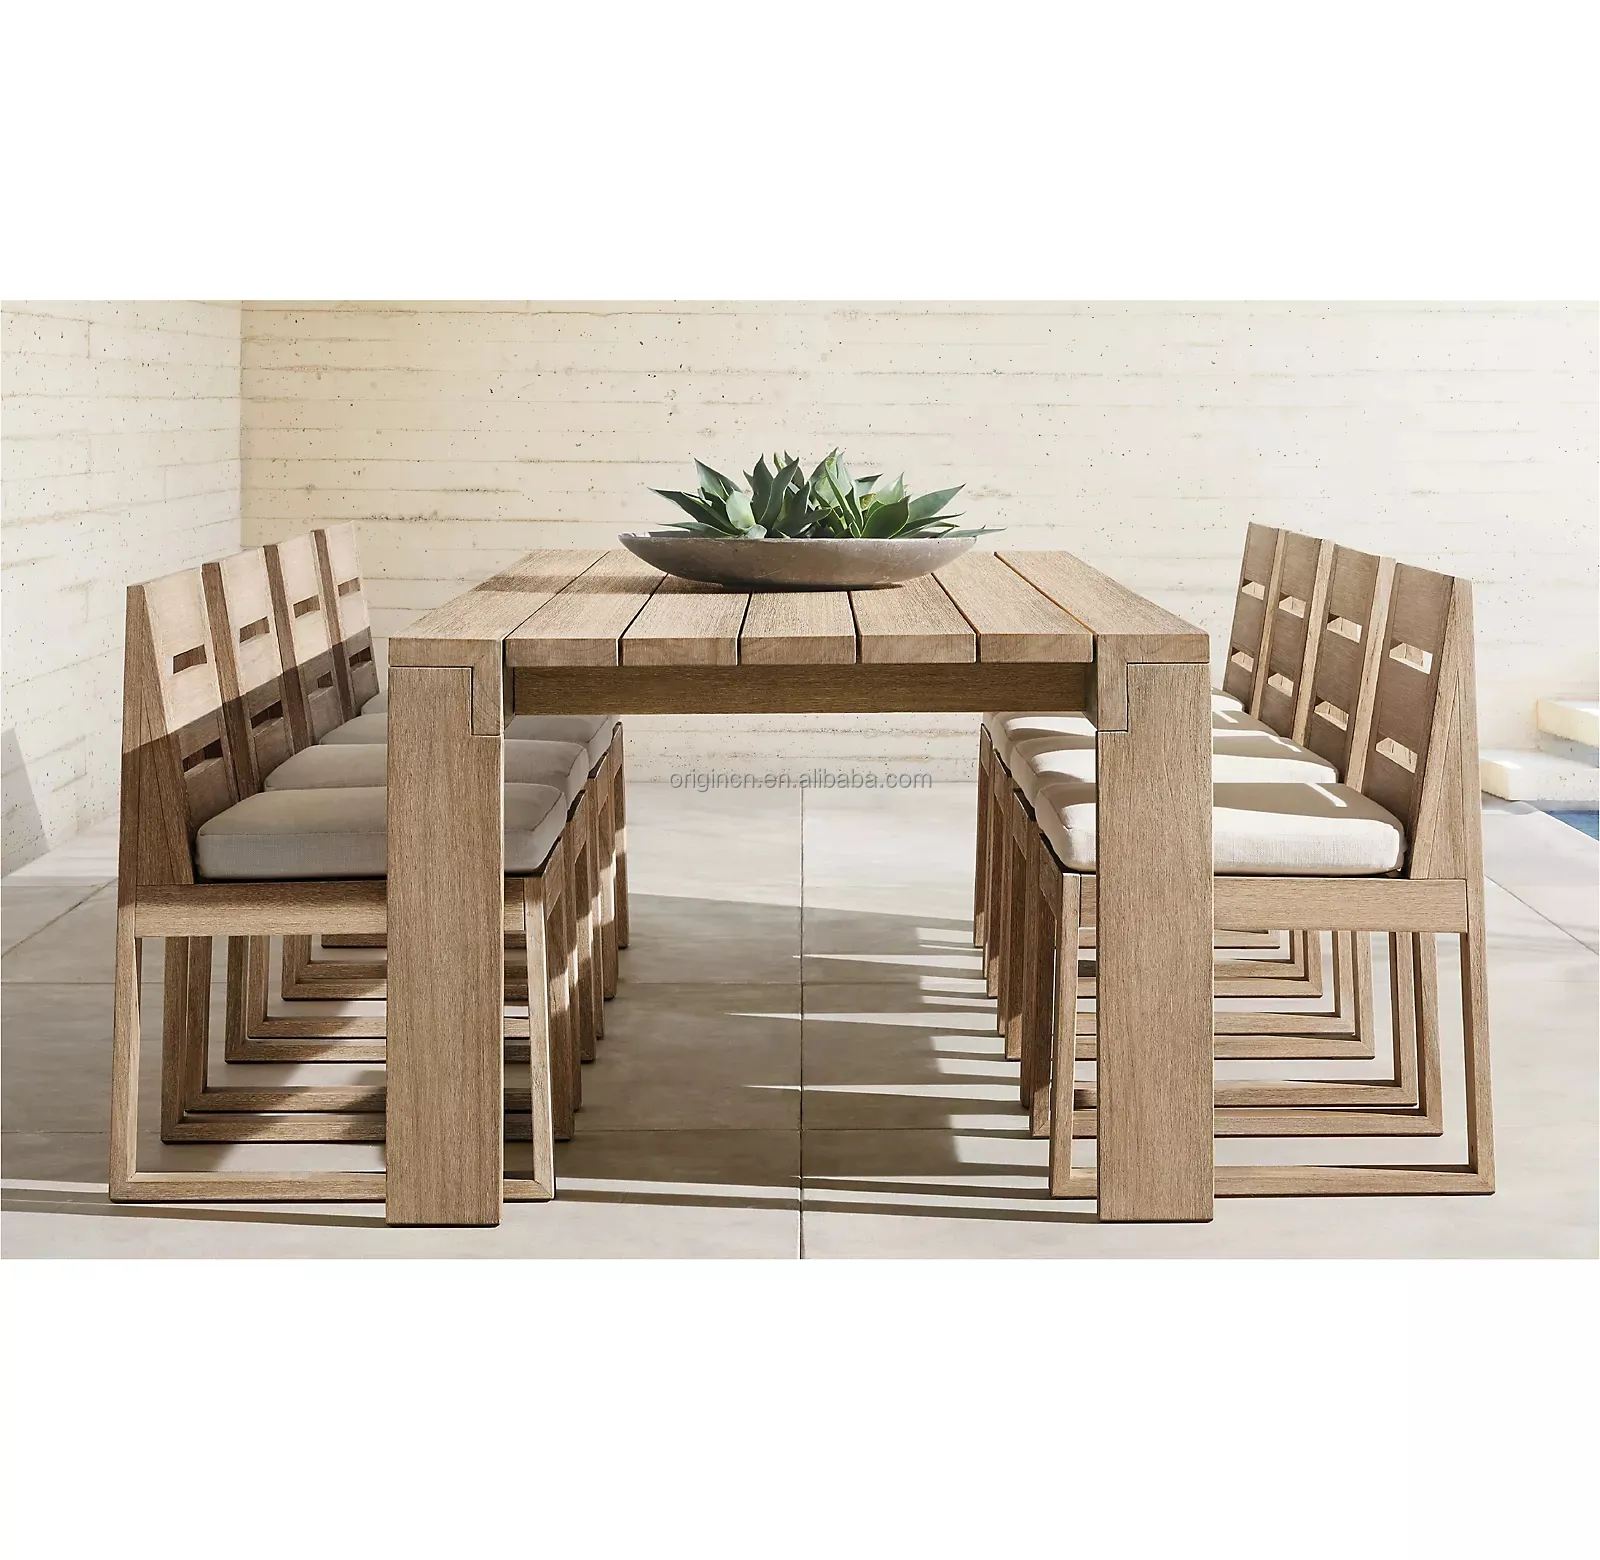 Moderne Gartenmöbel für den Außenbereich Esstischset mit 6 Rakit-Beinen Seitenteichholzstühle Esstische